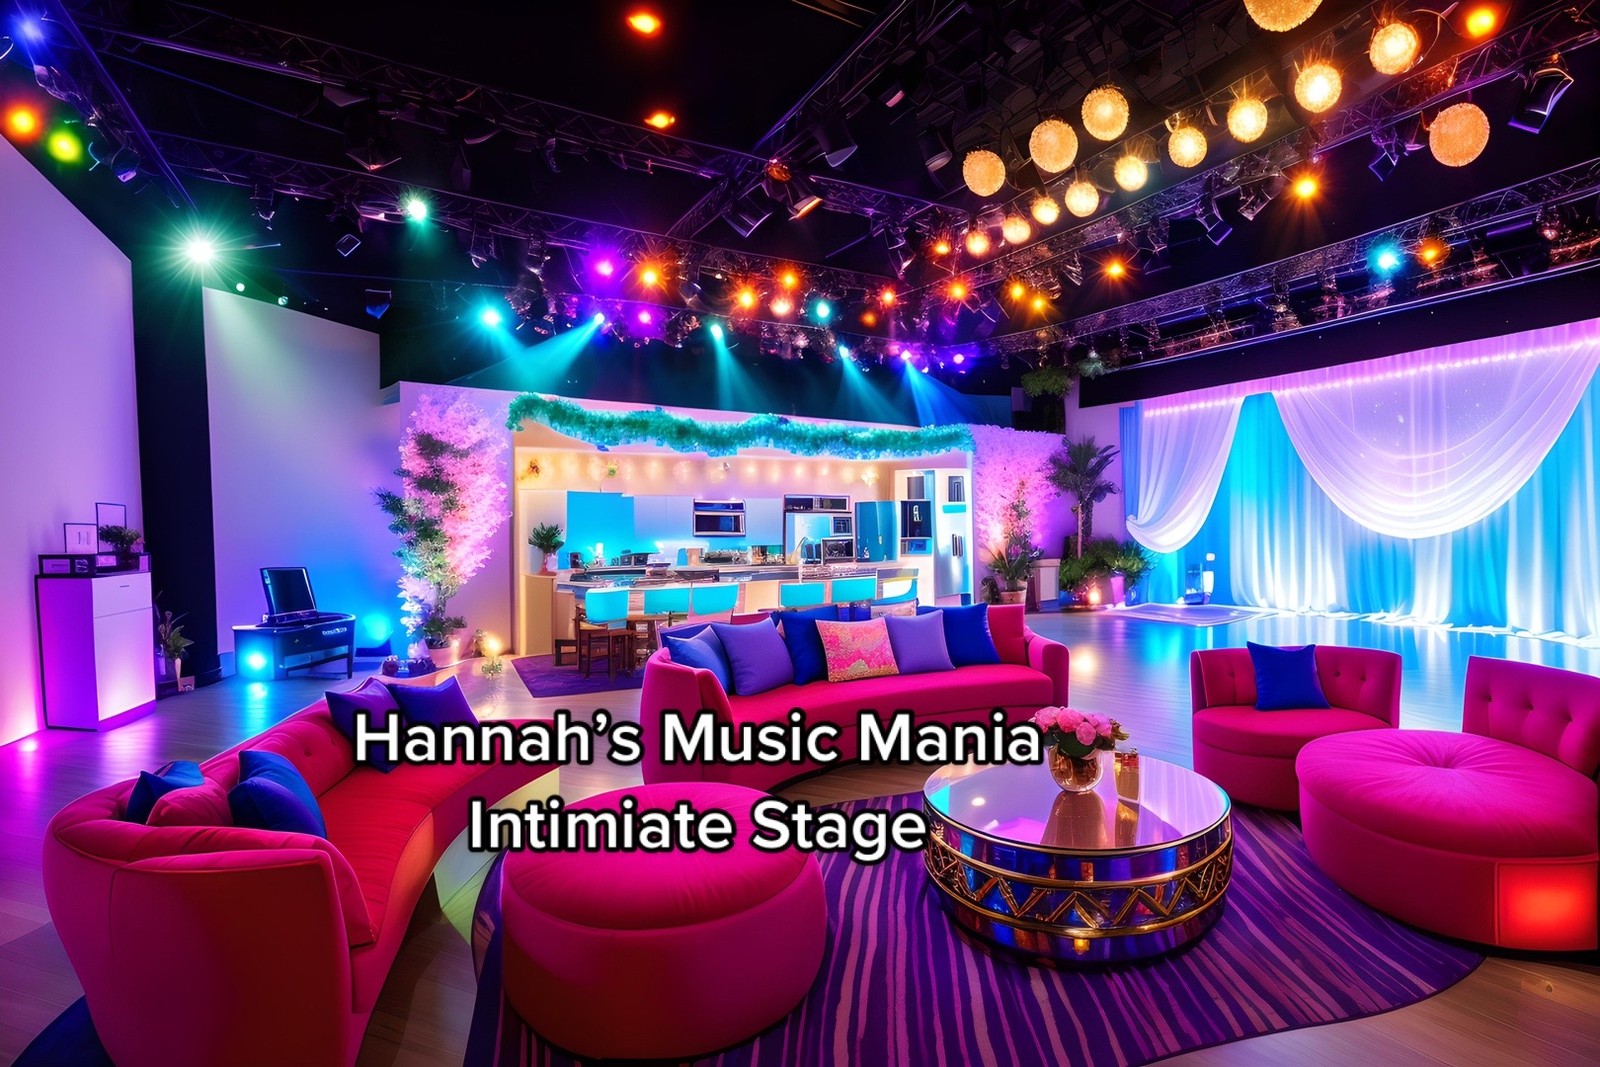 Estúdio intimista Música Mania do resort inspirado em Hannah Montana — Foto: aipresence / TikTok / Reprodução